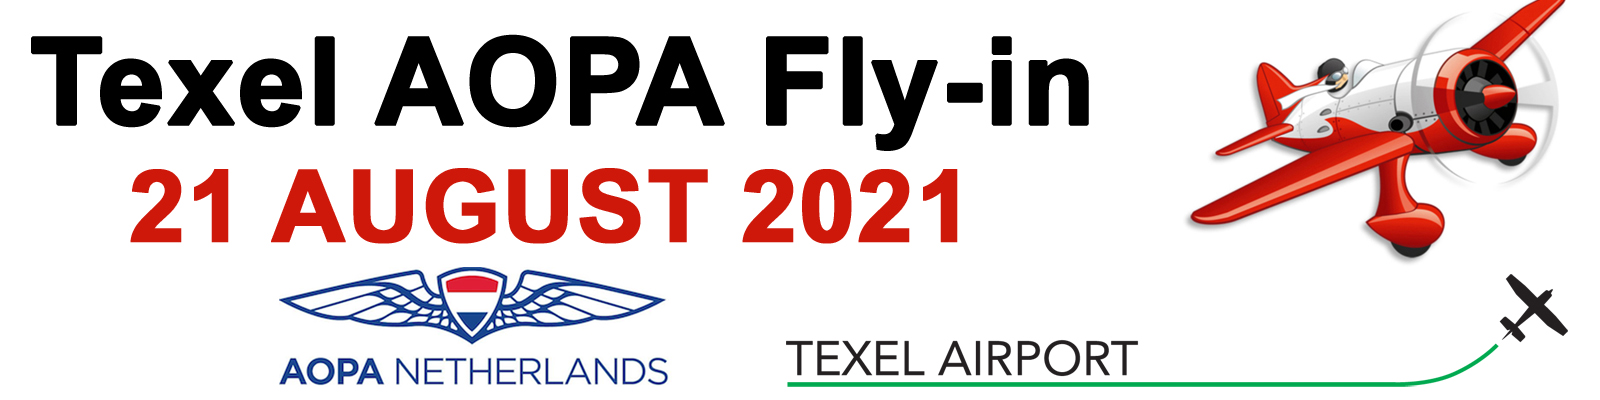 Texel AOPA Fly-in 2021 Logo